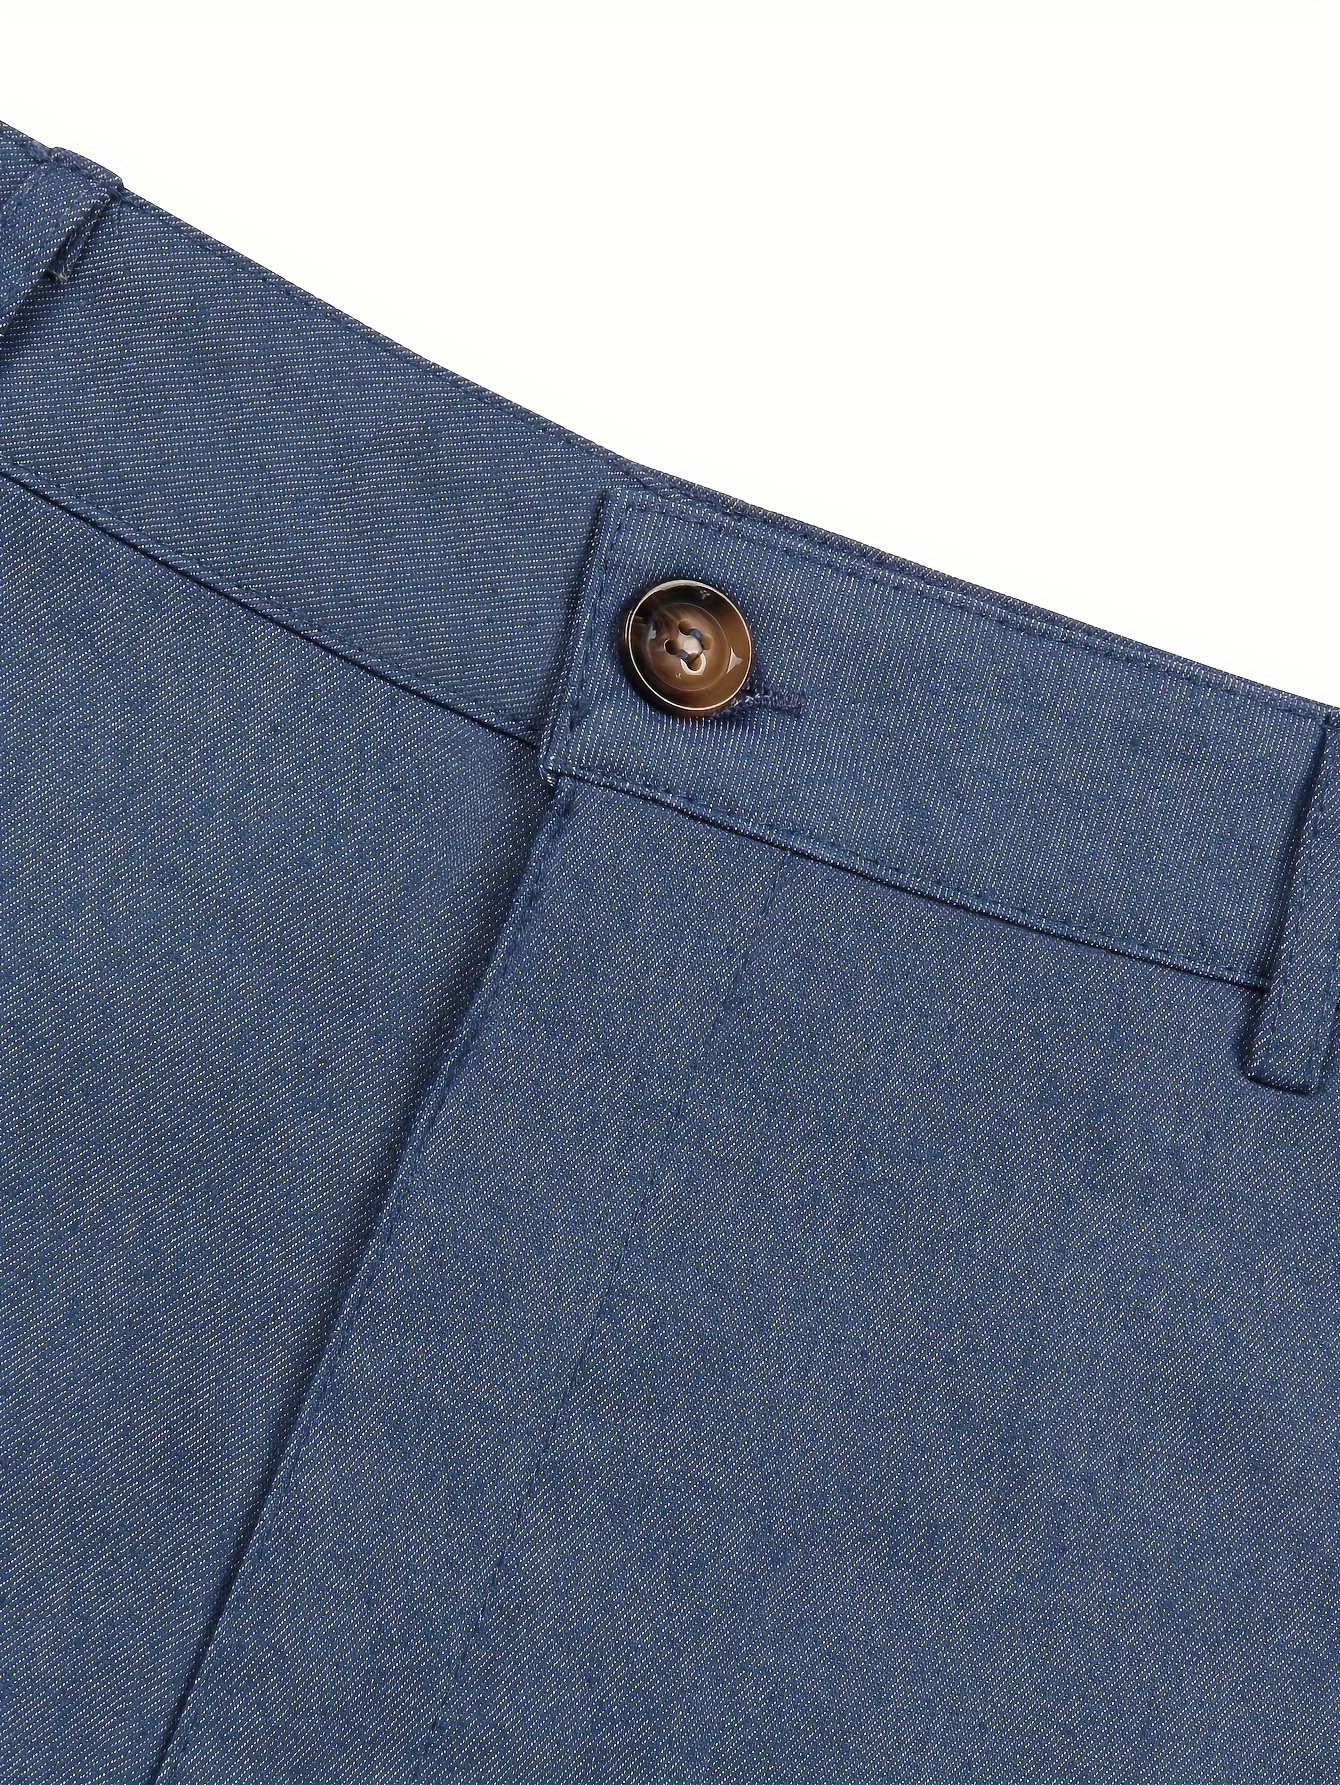 Men's Elegant Slacks Semi formal Dress Pants Business - Temu Canada